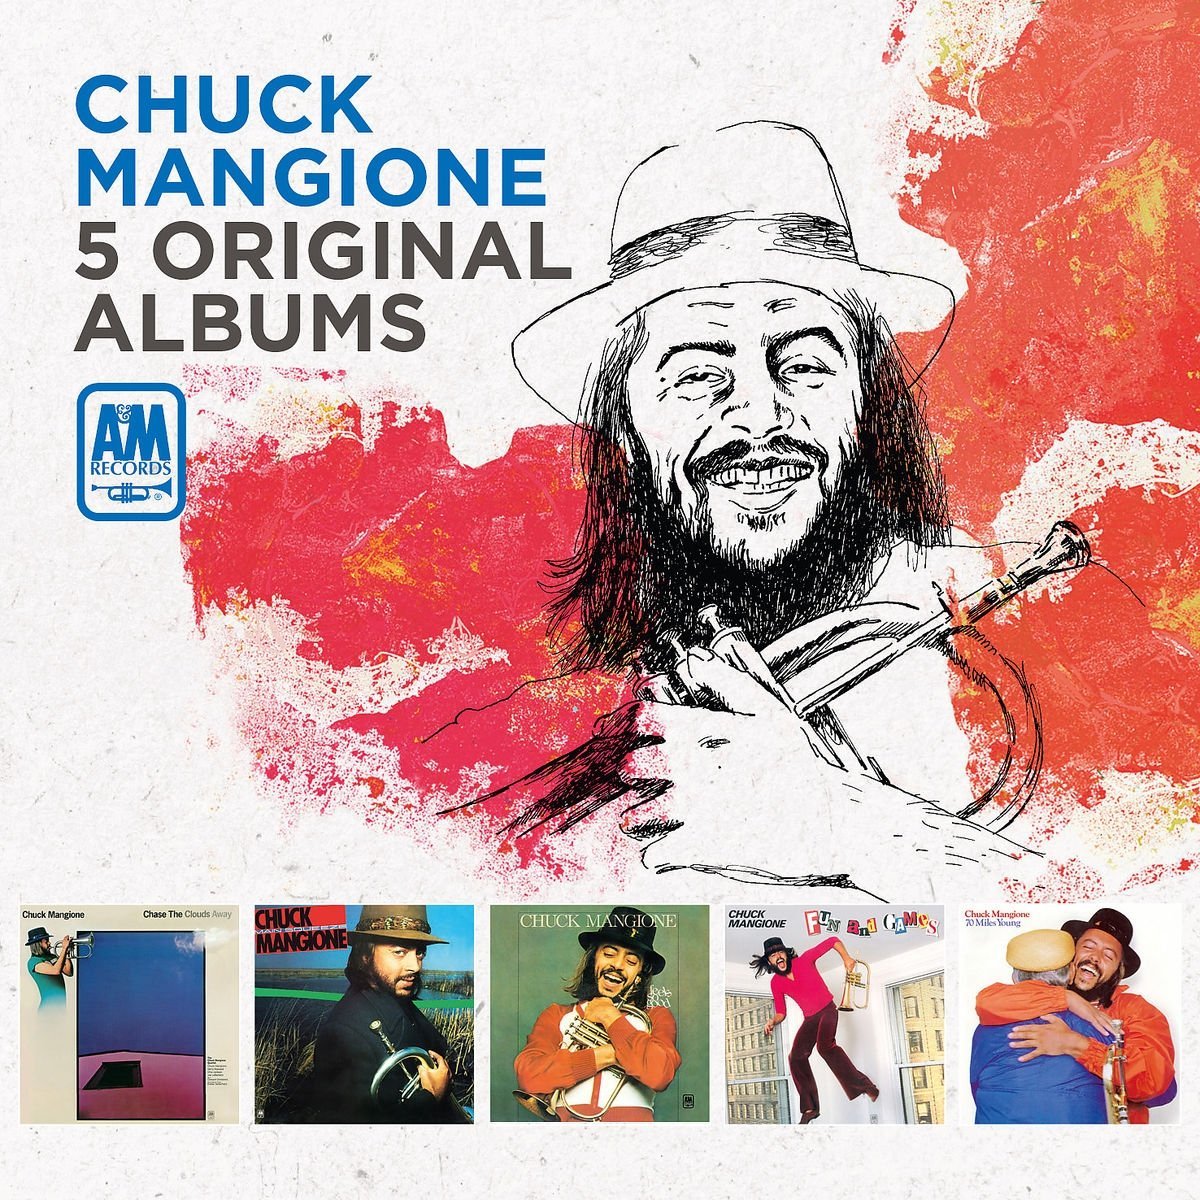 CHUCK MANGIONE - 5 Original Albums cover 